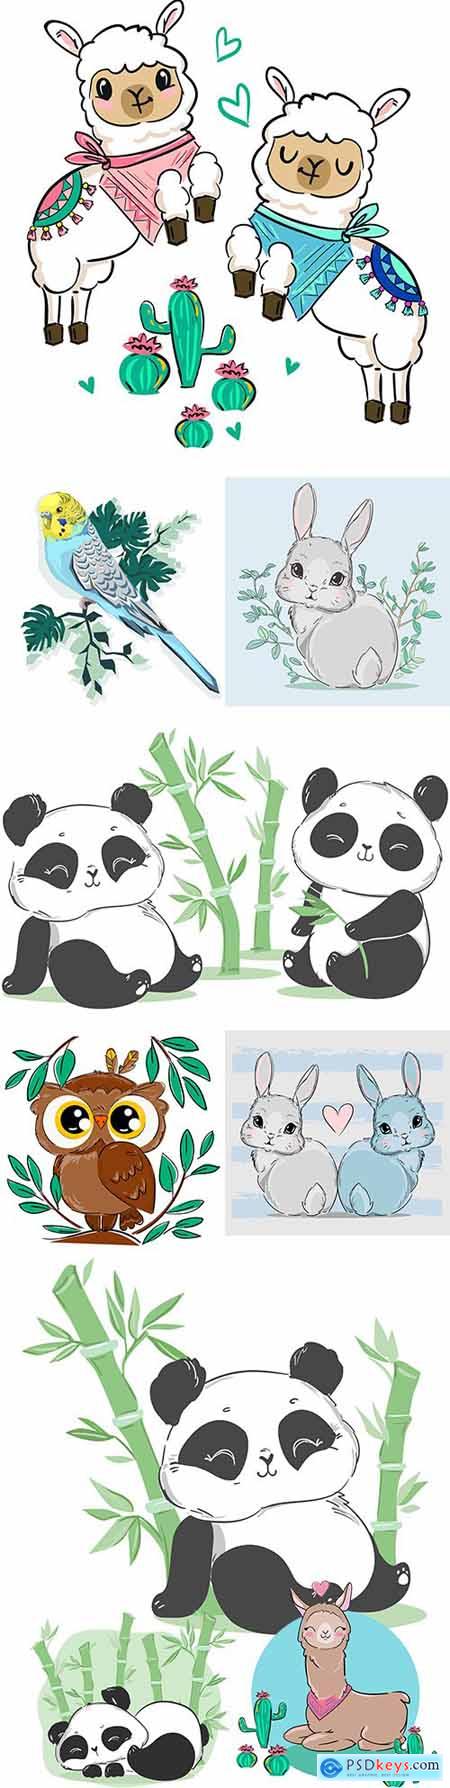 Cute panda, llama and Easter rabbit illustration cartoon